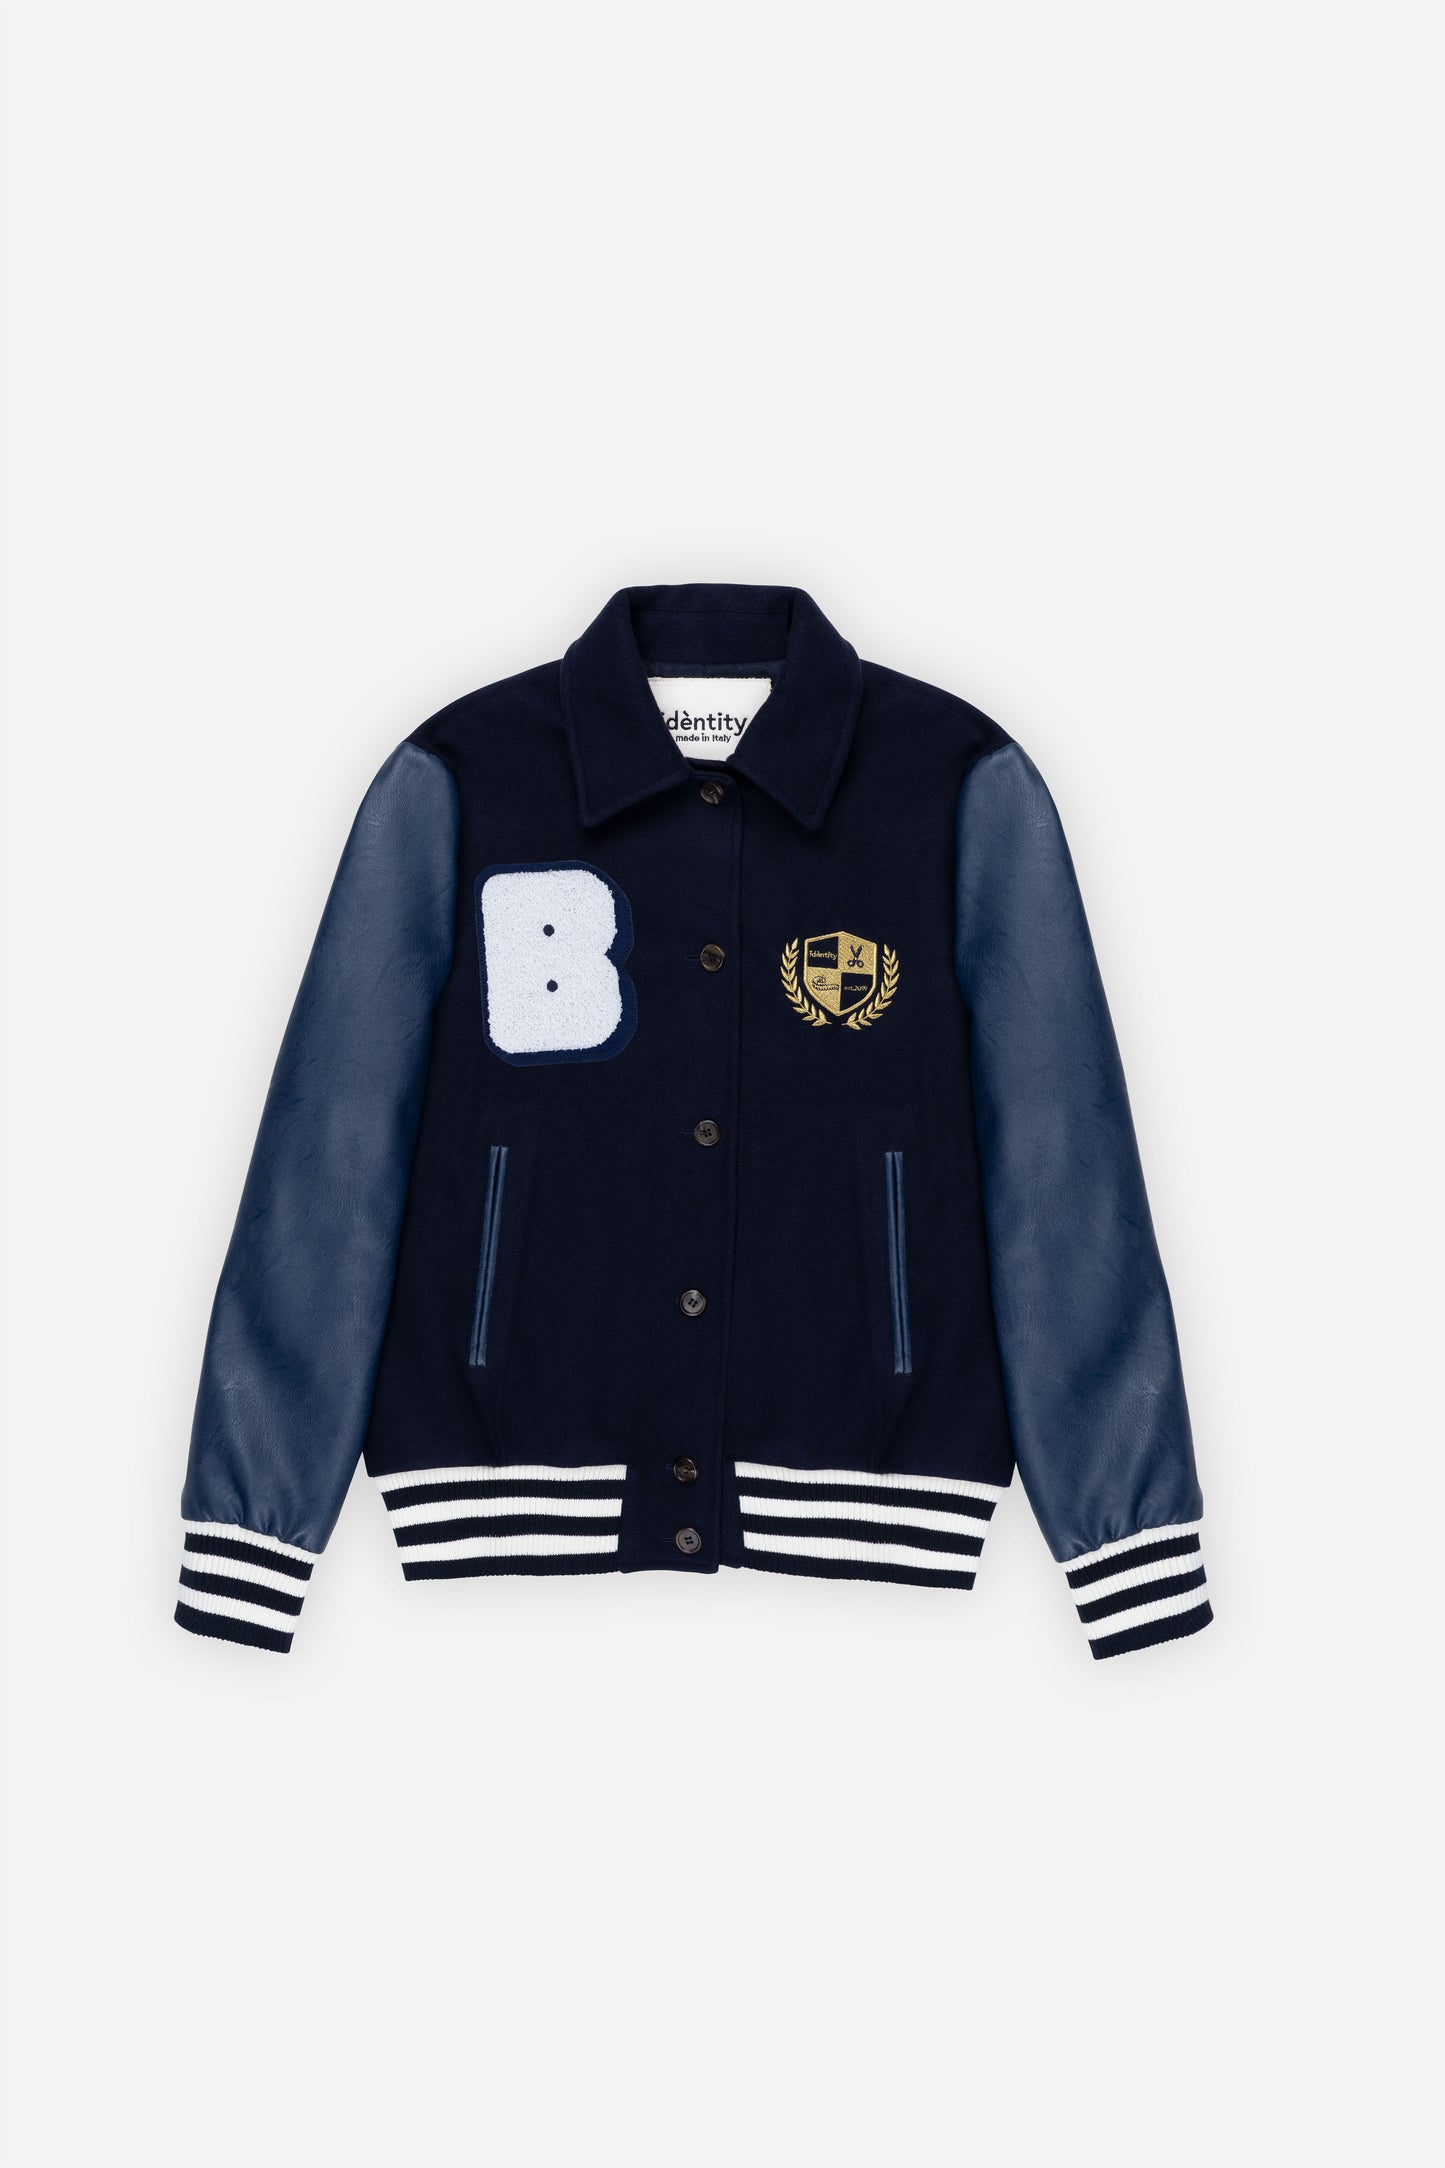 Berkeley Jacket - Prussia Blue